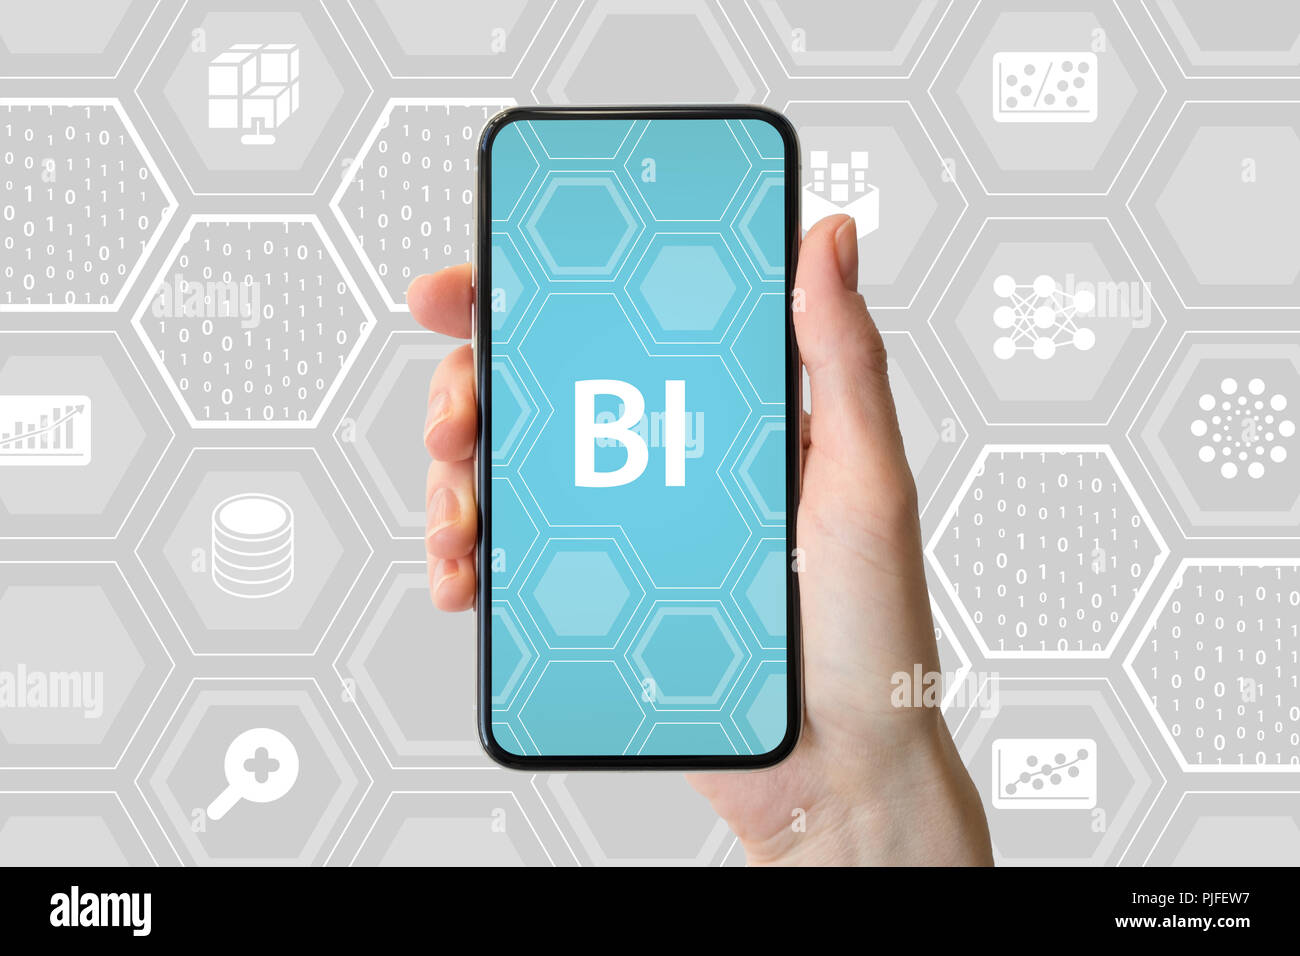 Concept de Business Intelligence. Hand holding smartphone moderne en face de fond neutre avec des icônes. Banque D'Images